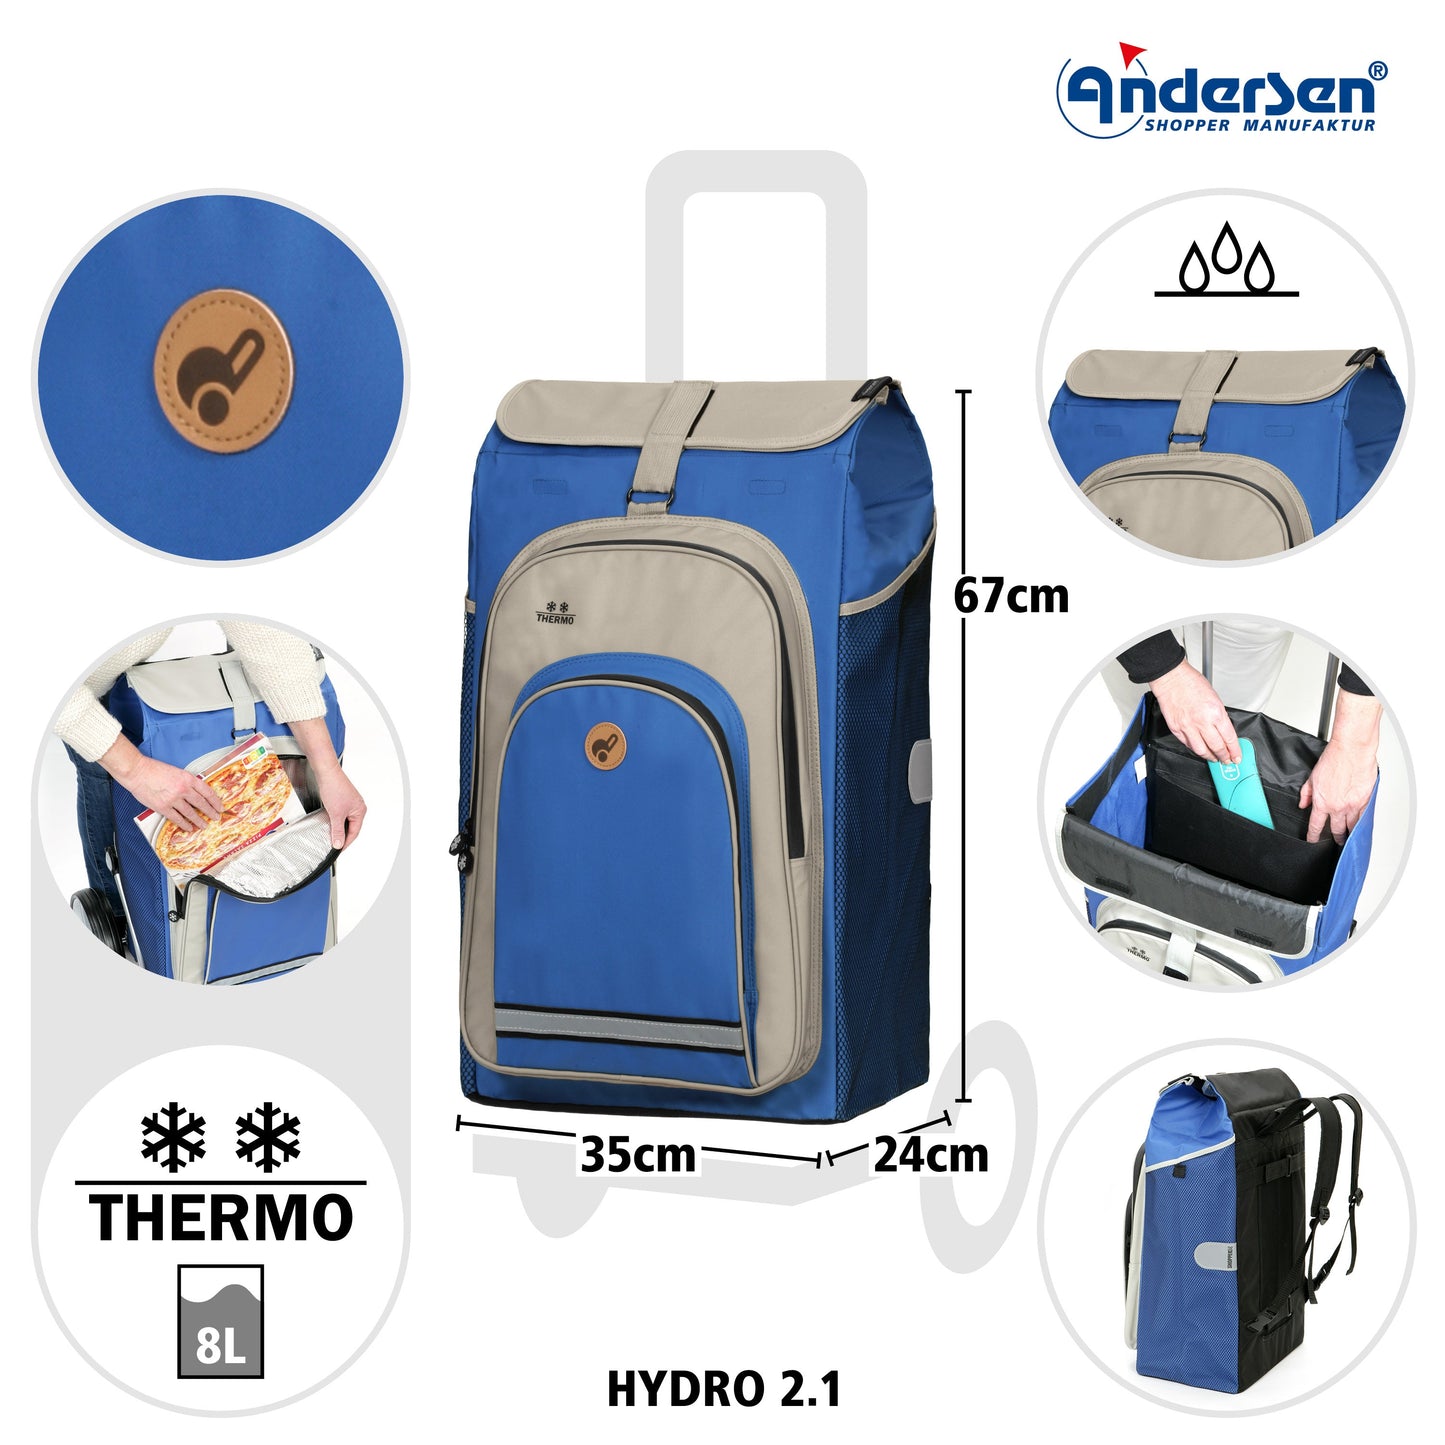 Andersen Shopper Manufaktur-Hydro 2.1 blau-www.shopping-trolley.ch-bild2